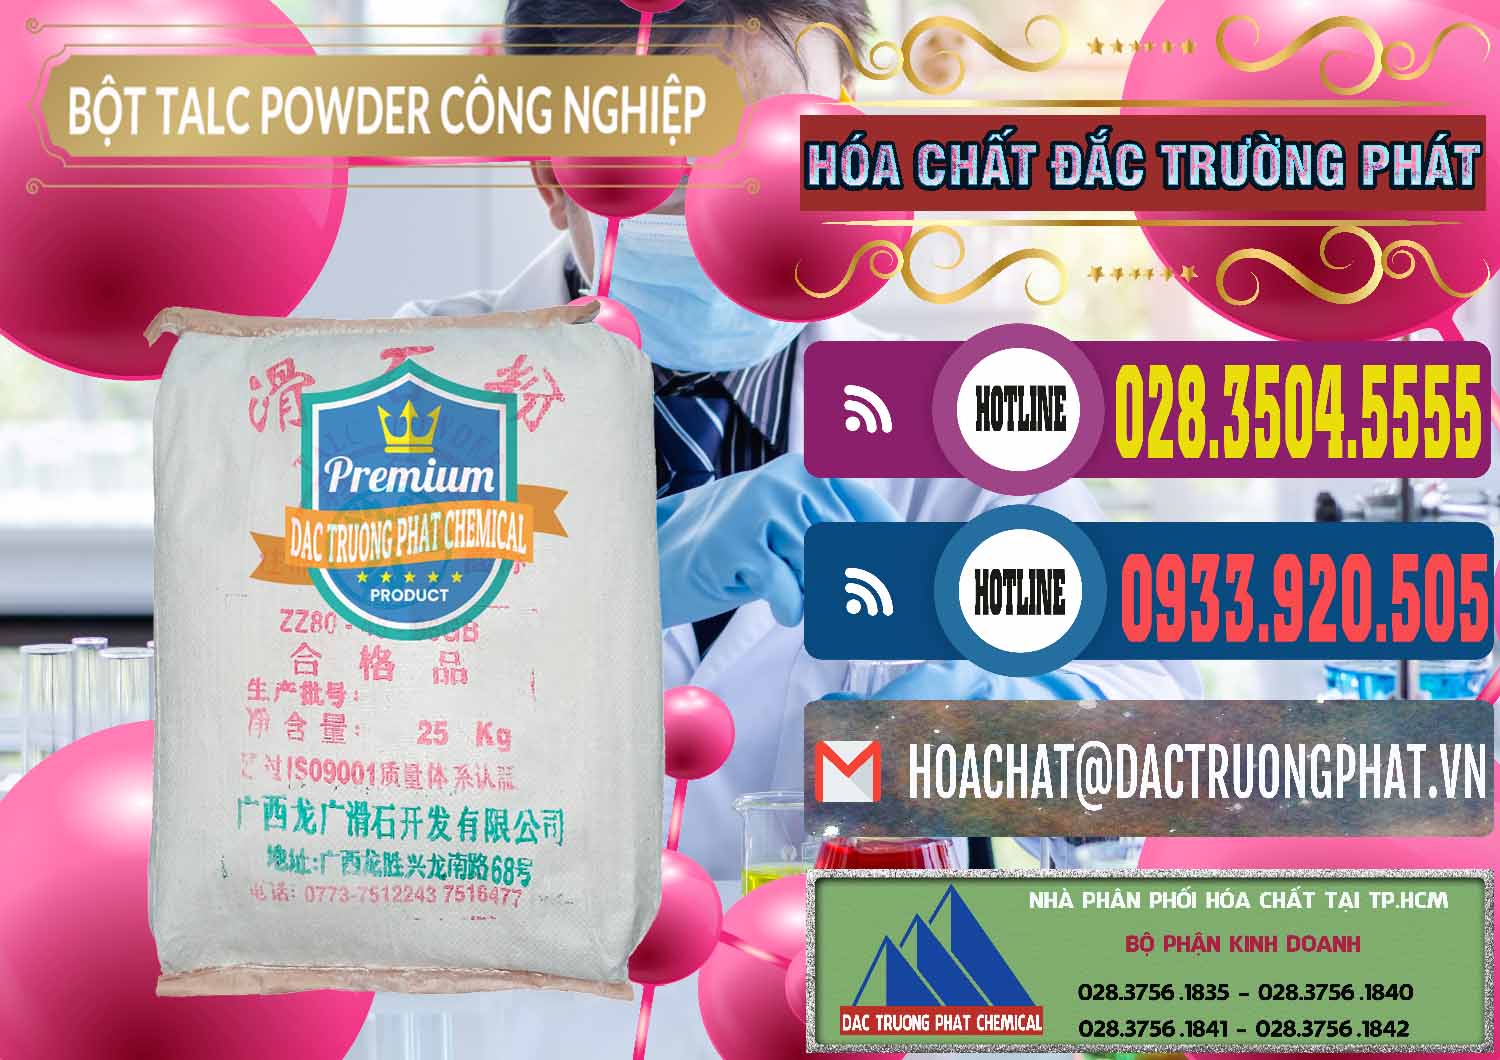 Chuyên cung cấp - bán Bột Talc Powder Công Nghiệp Trung Quốc China - 0037 - Phân phối _ nhập khẩu hóa chất tại TP.HCM - muabanhoachat.com.vn